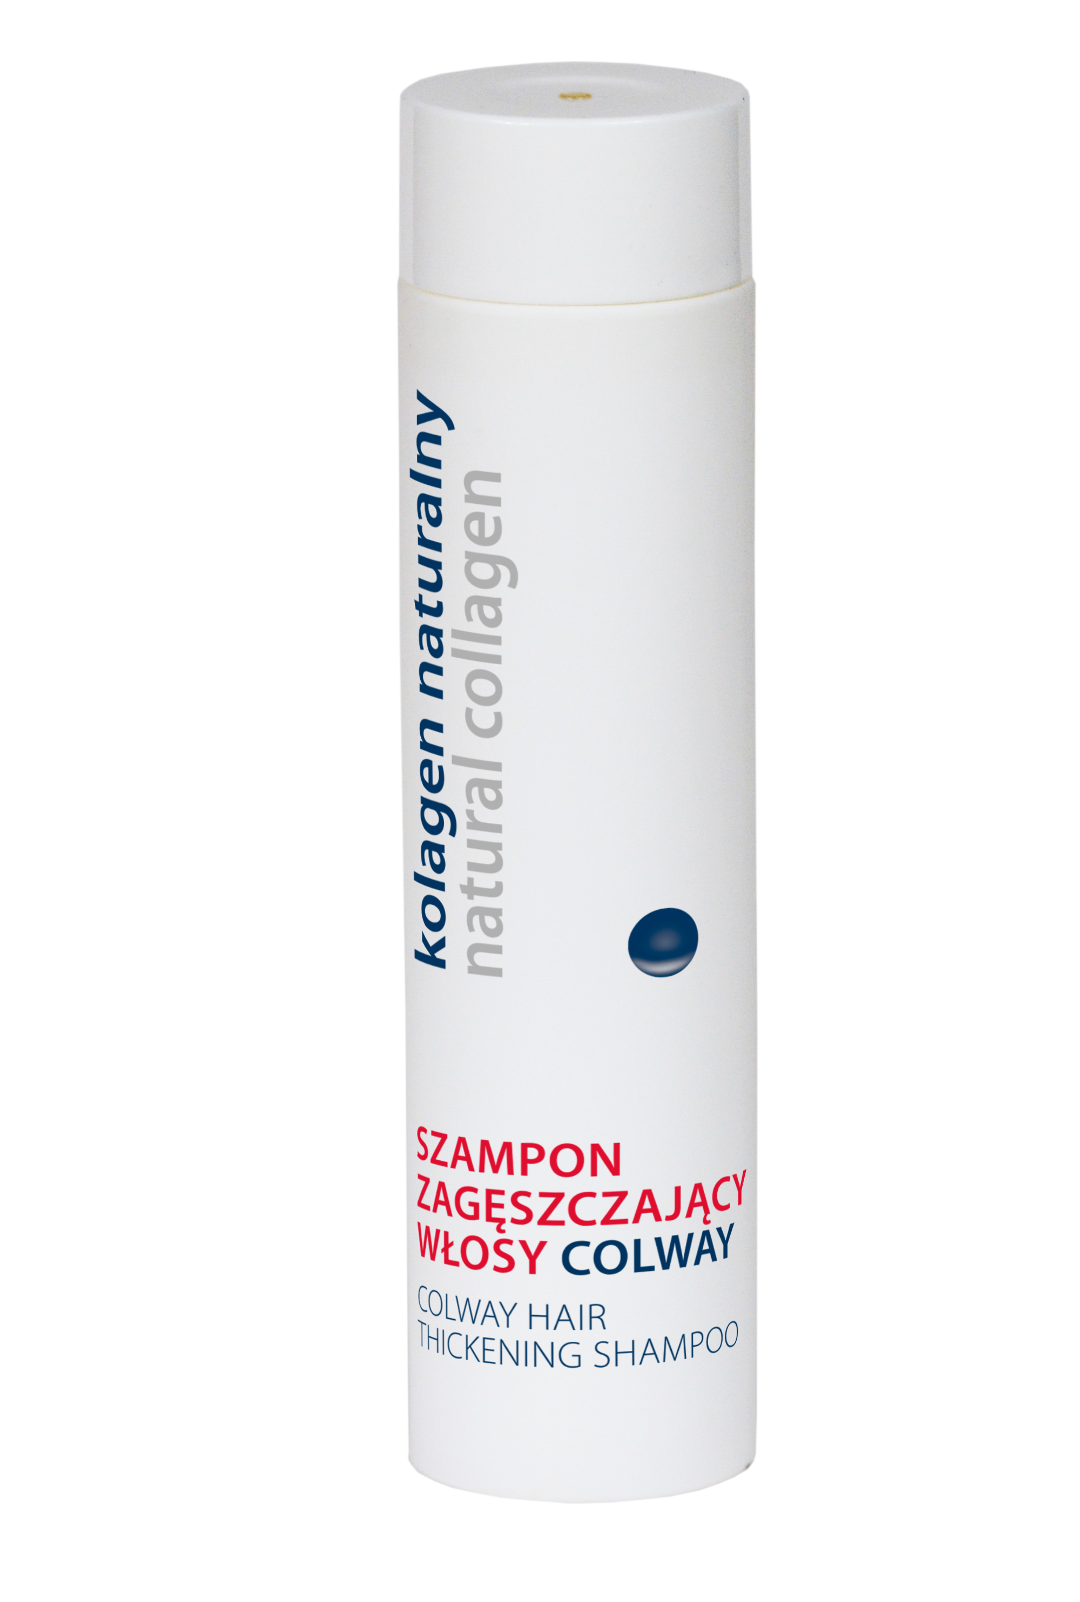 kolagenowy szampon do włosów colway opinie